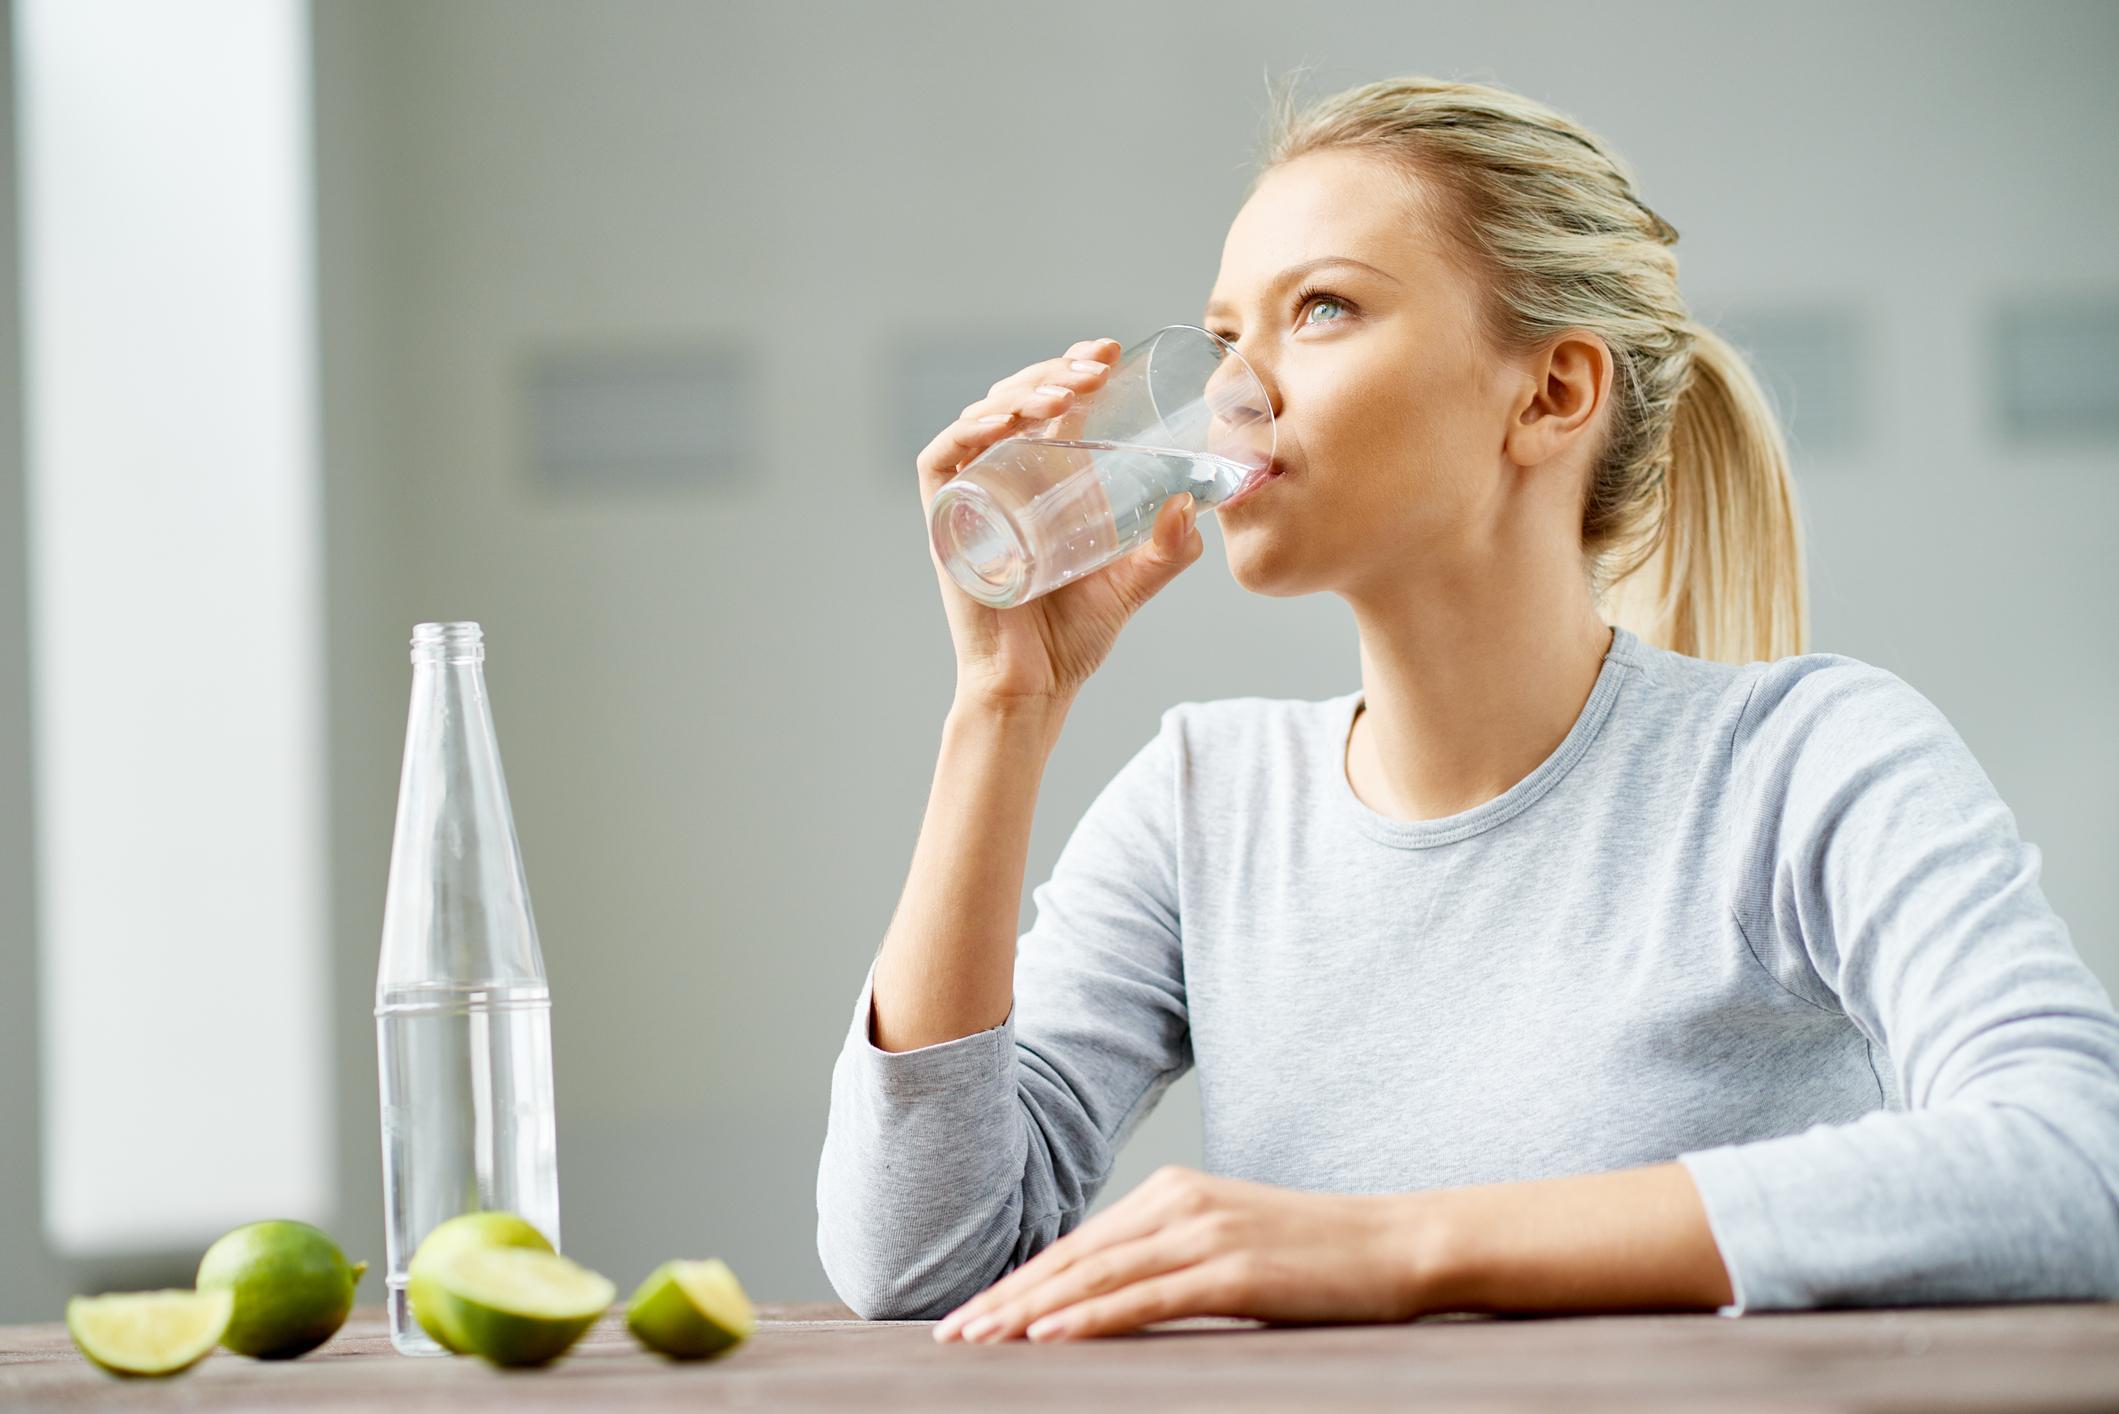 Запивать теплой водой. Обильное питье. Женщина пьет воду. Человек пьет воду из стакана. Питье воды.